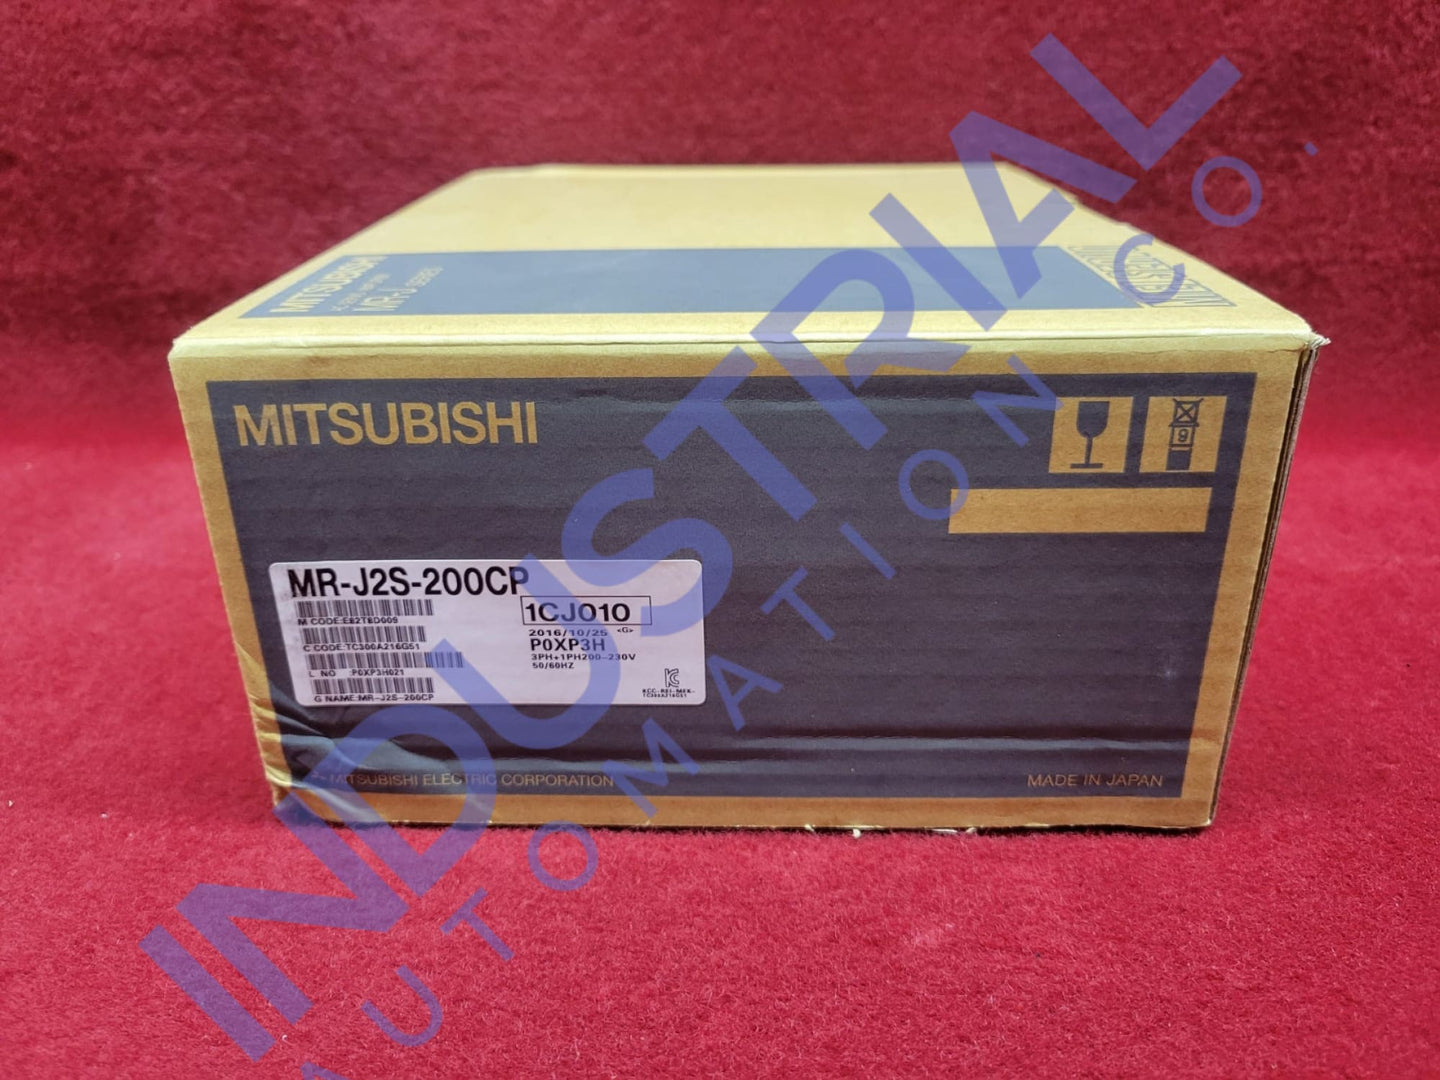 Mitsubishi Mr-J2S-200Cp